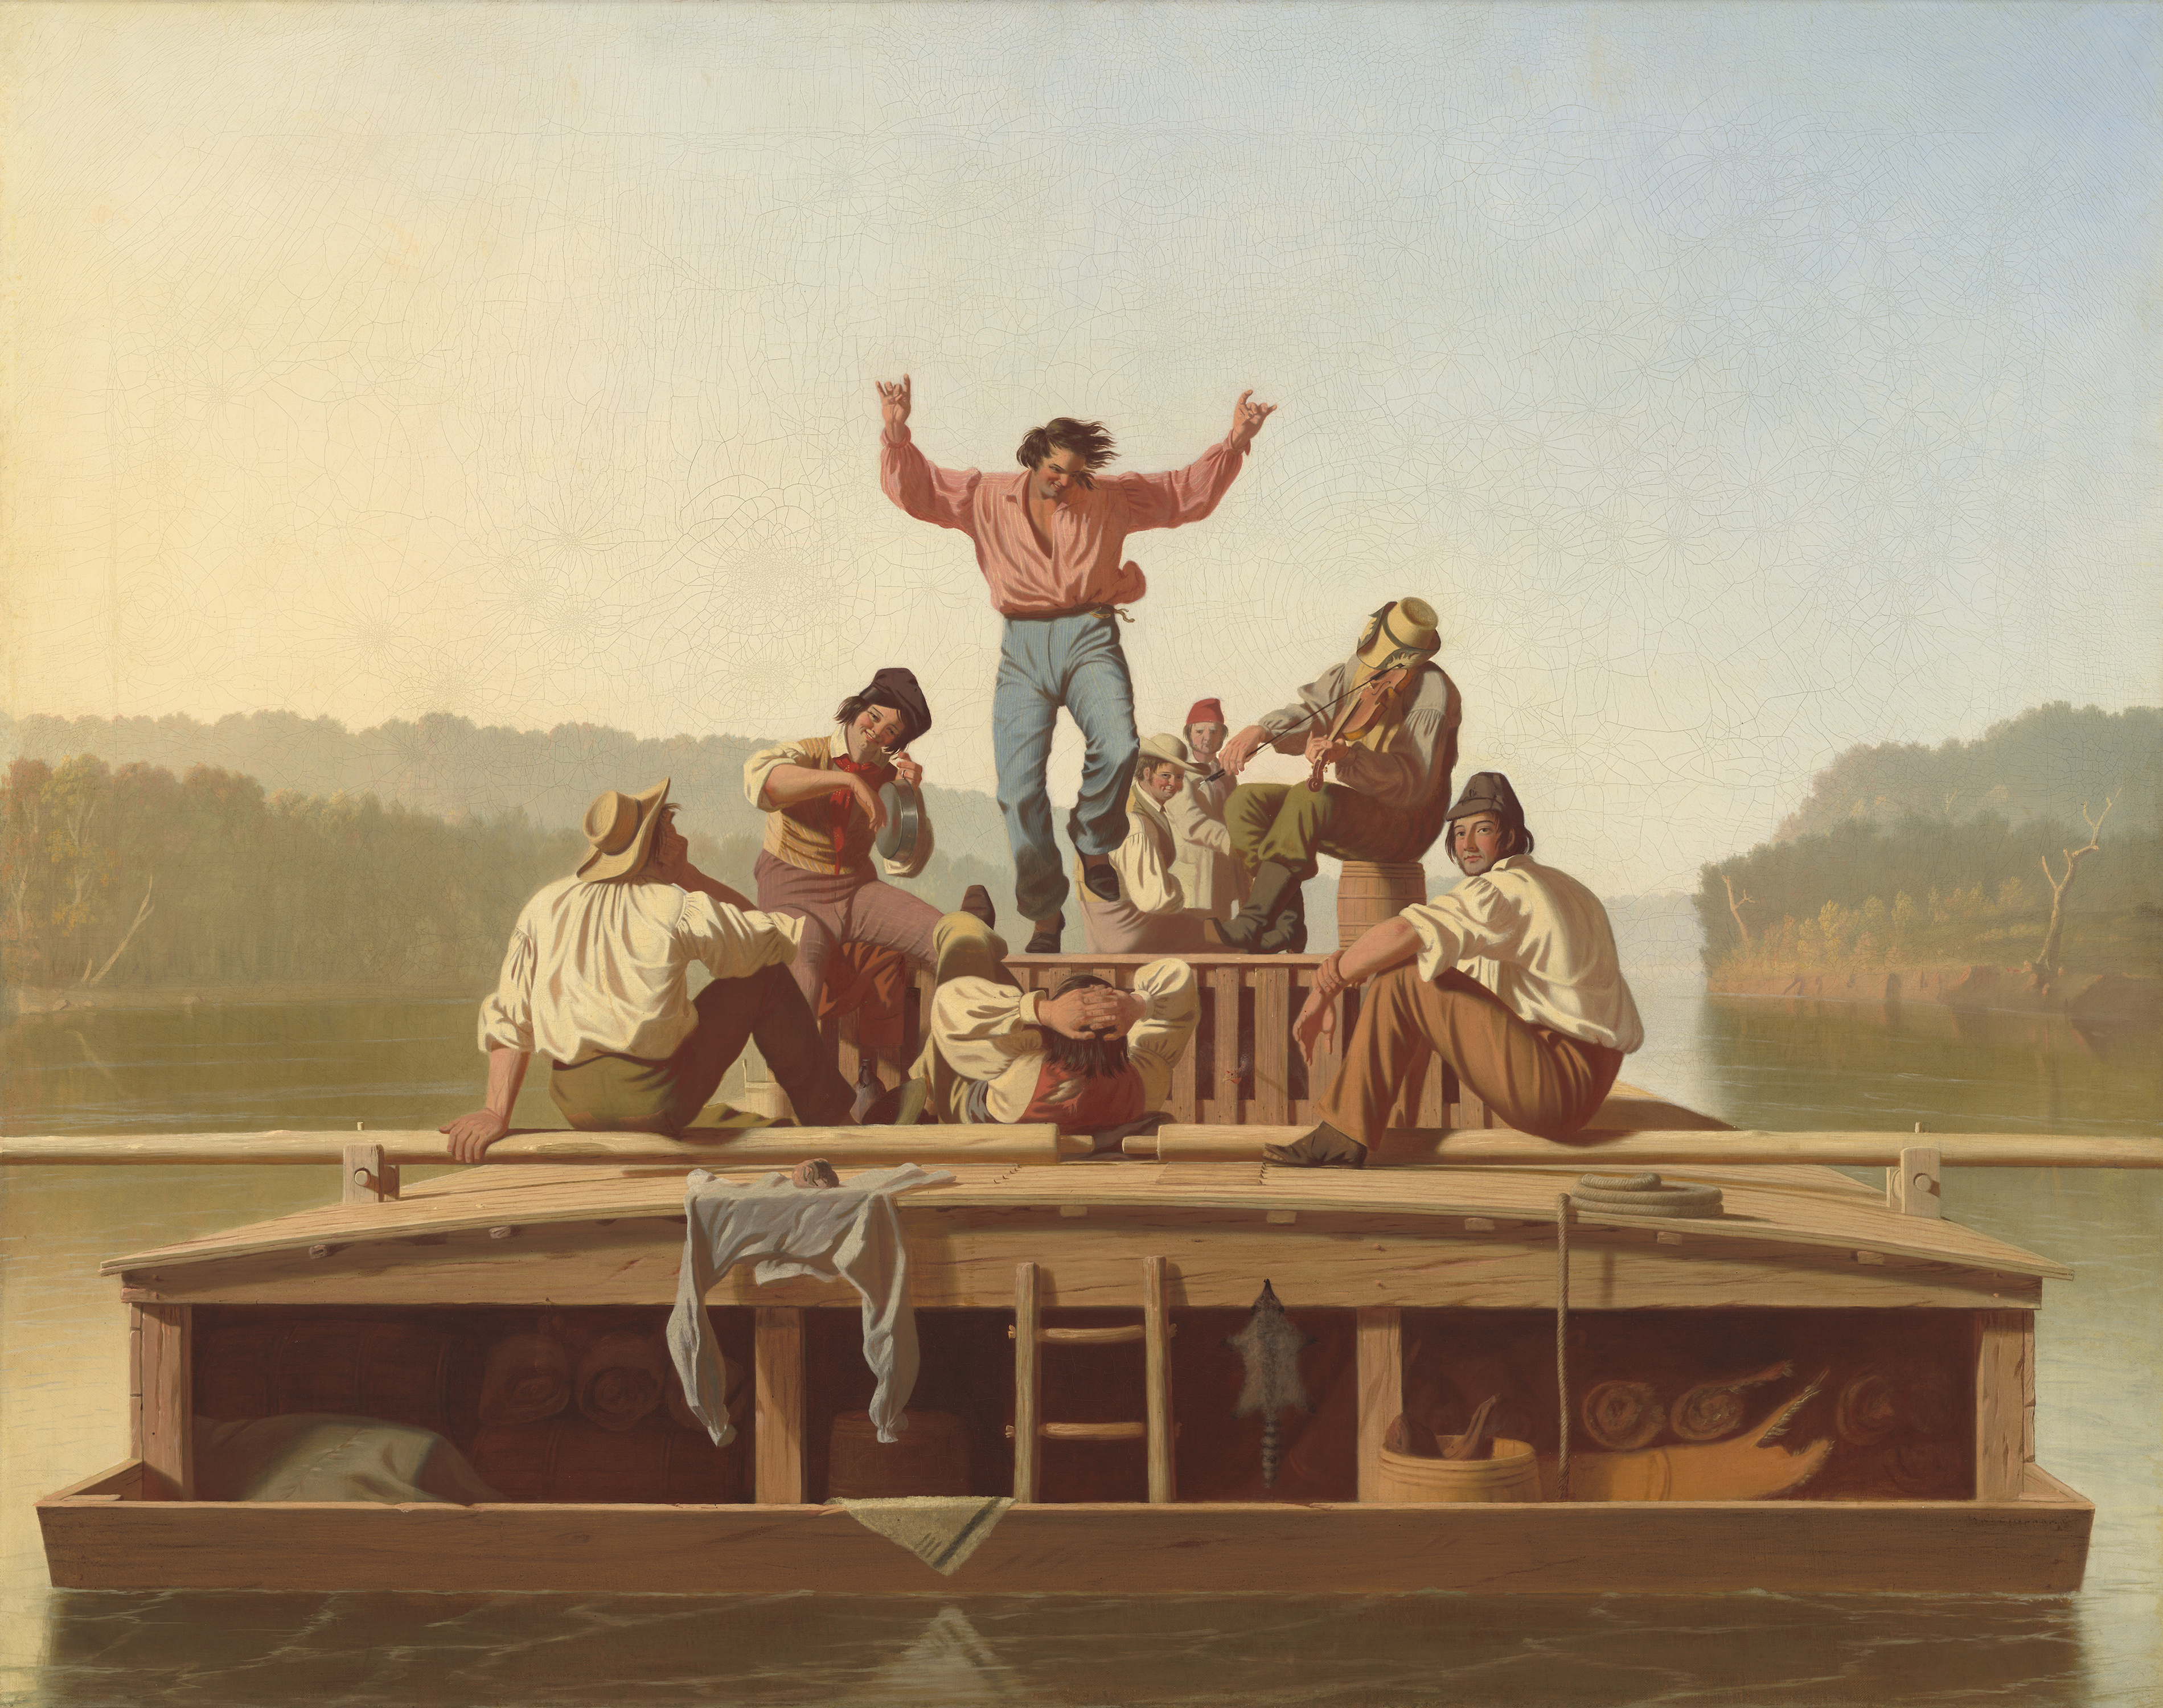 歡樂的船夫 by George Caleb Bingham - 1846 